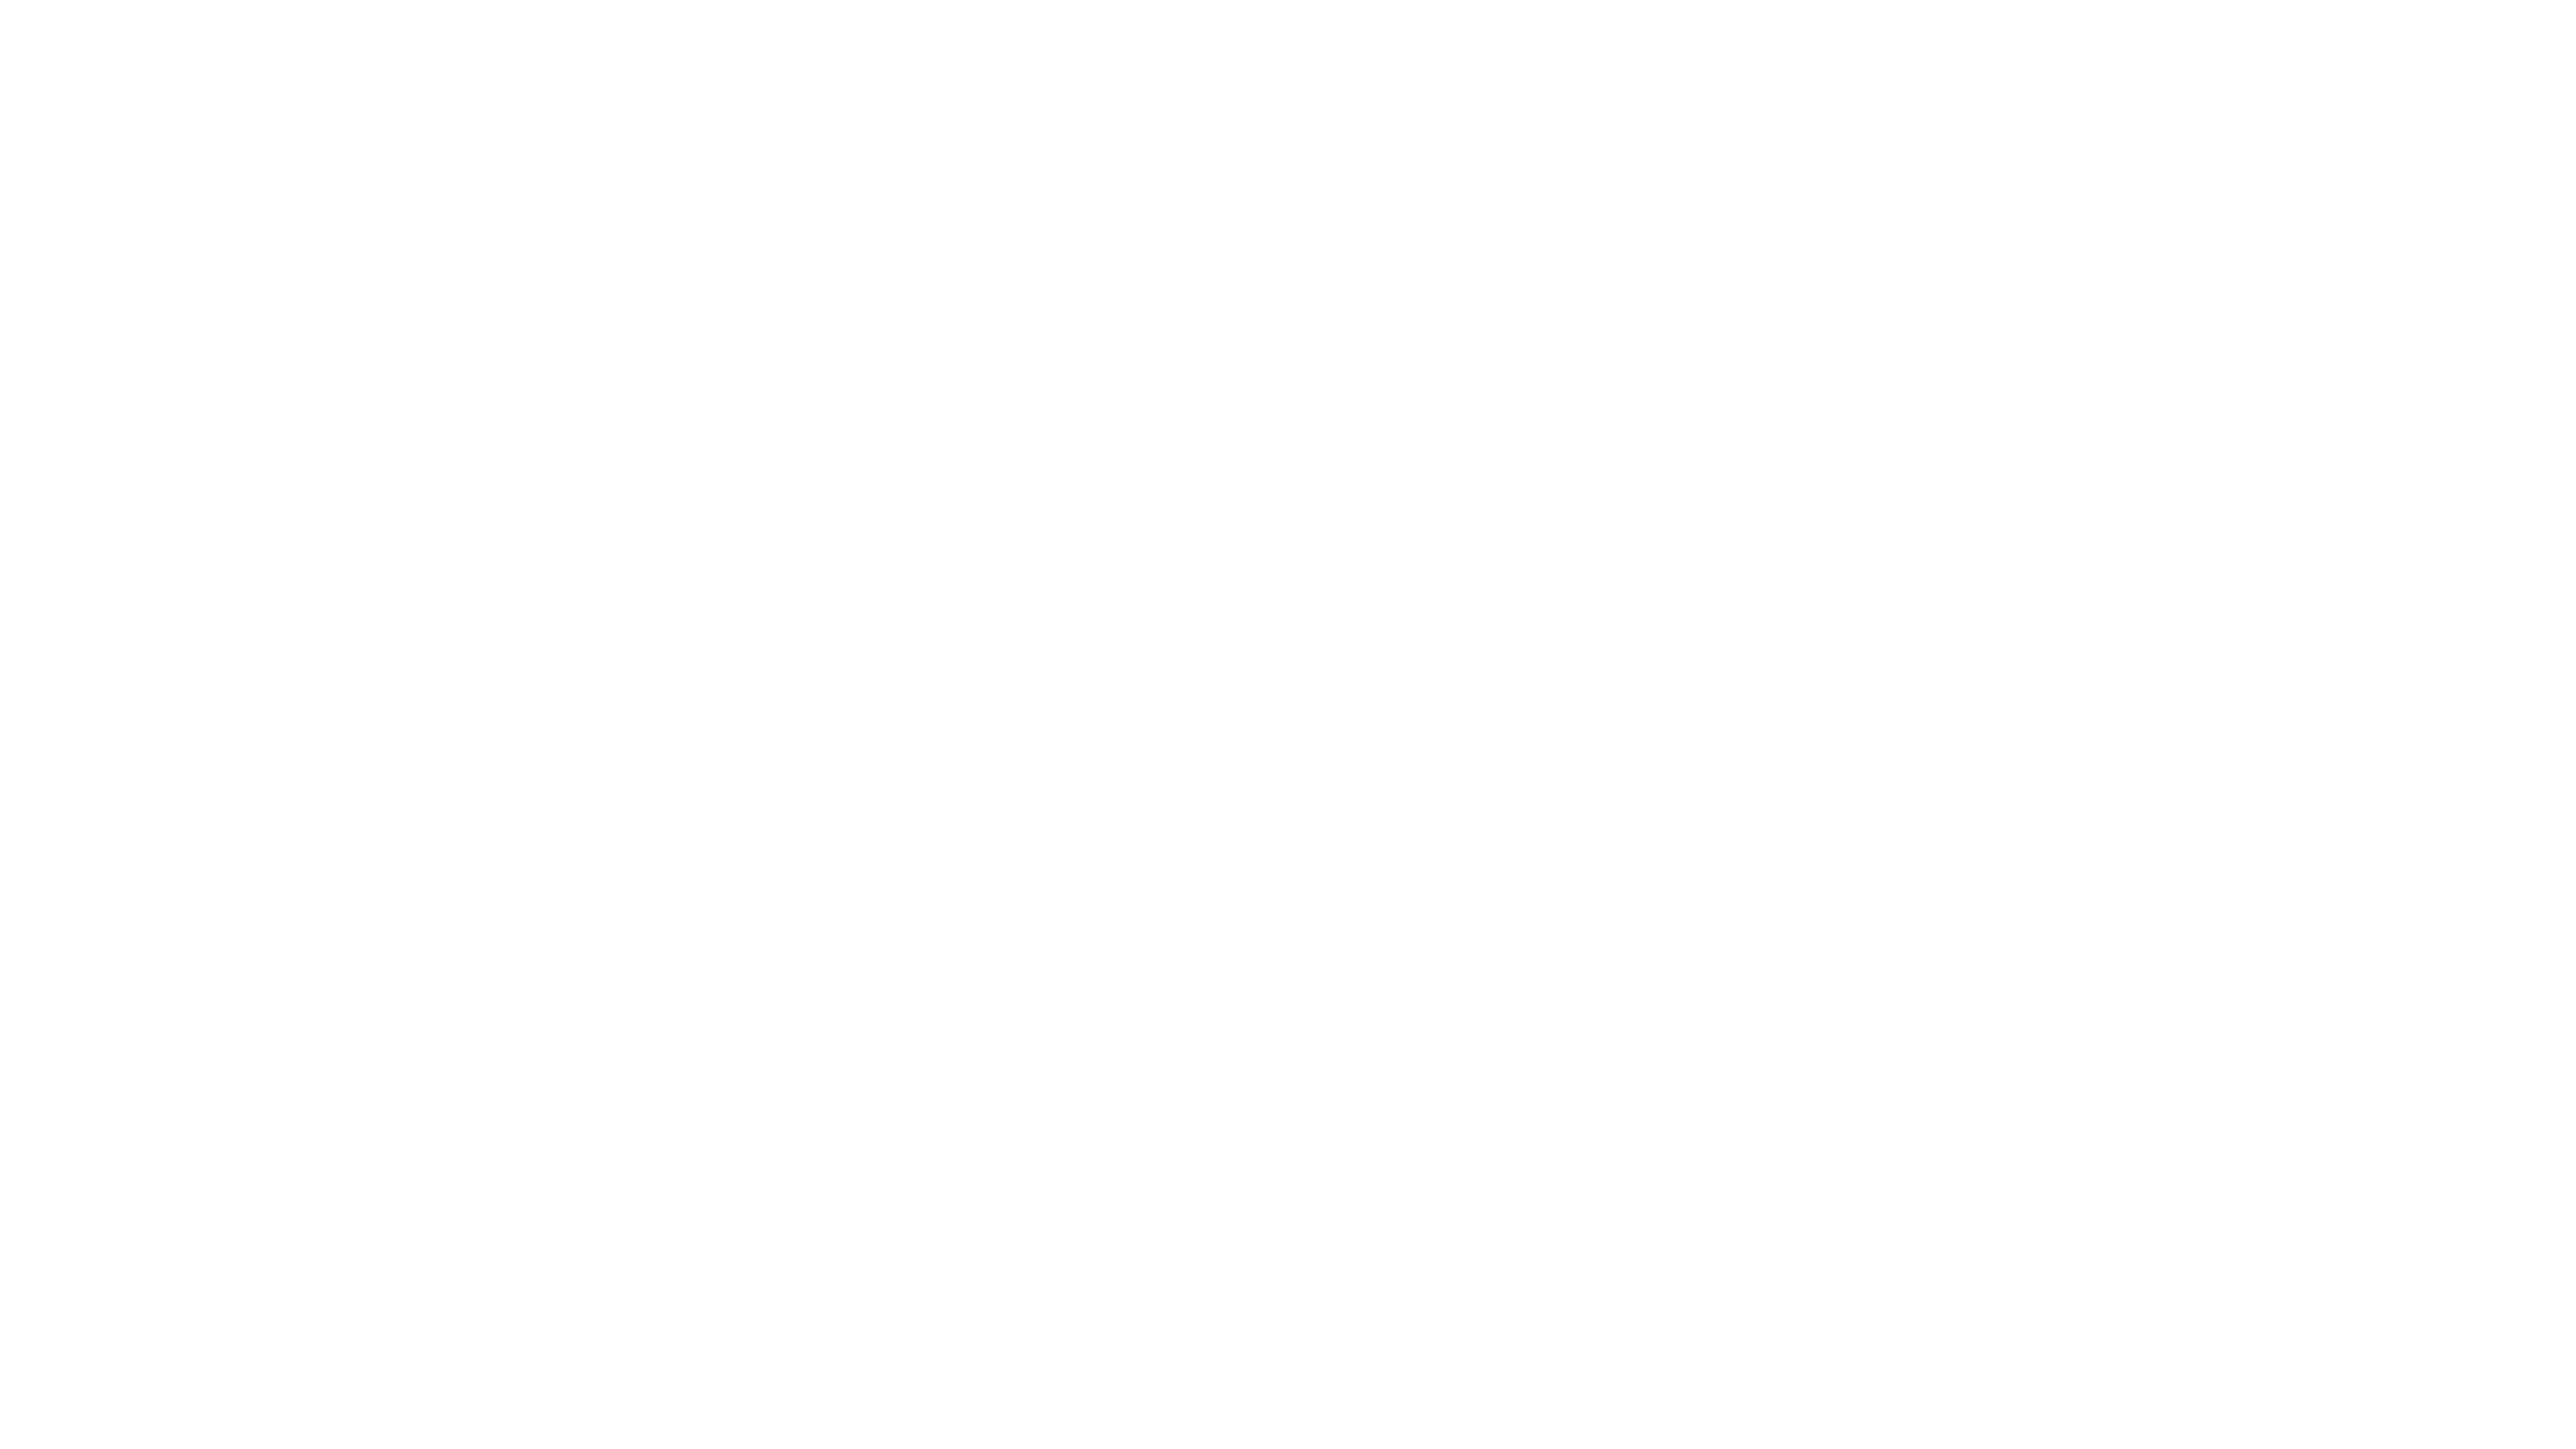 Mr Sanchez